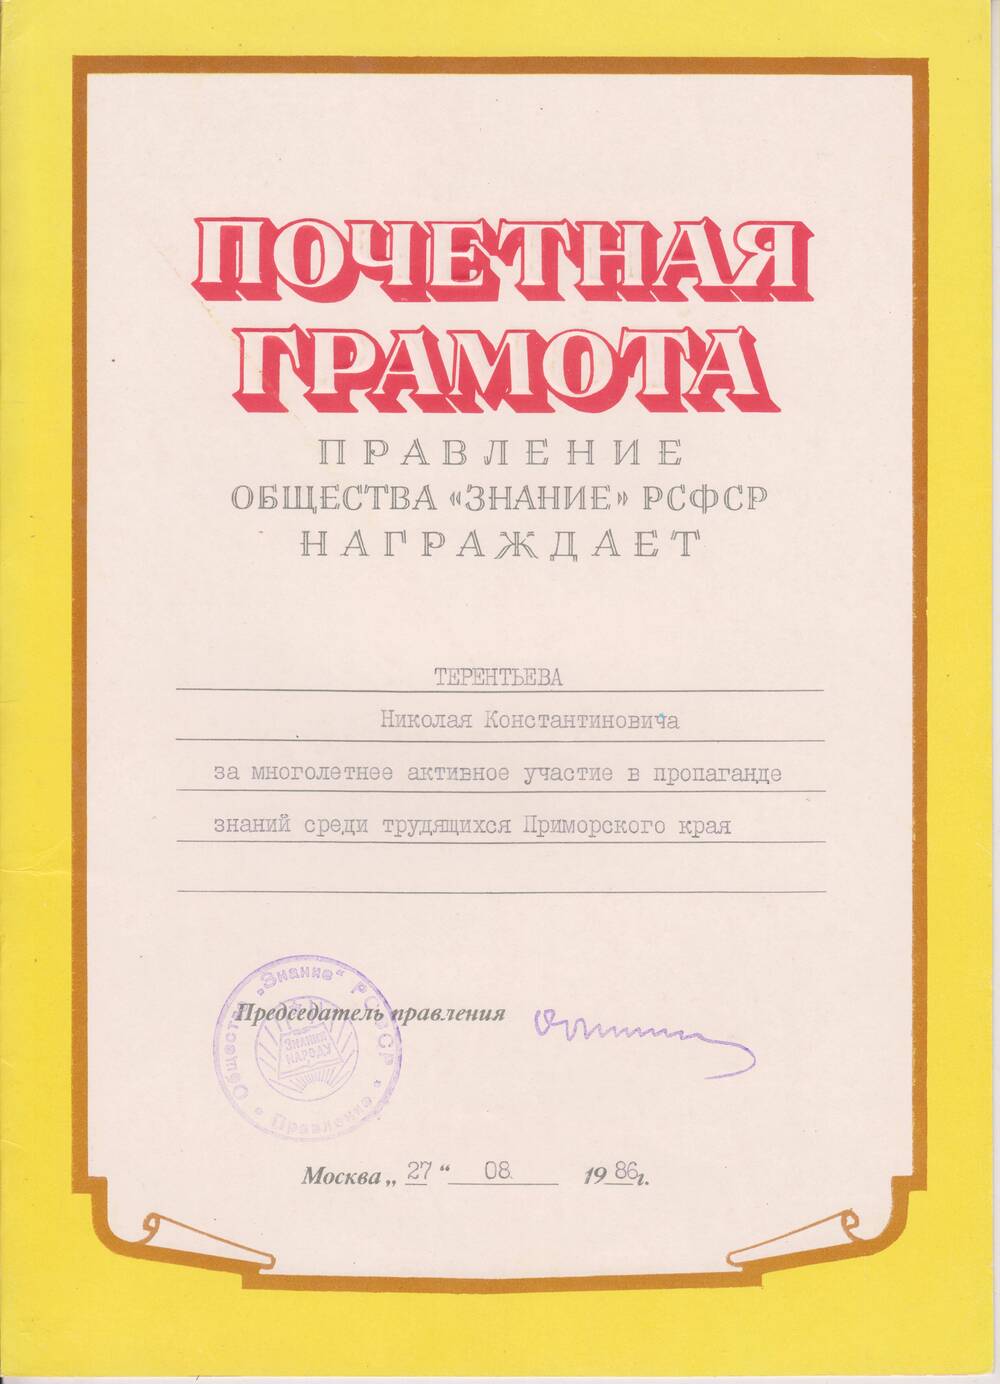 Грамота Терентьеву Н.К. за многолетнее активное участие в пропаганде знаний среди трудящихся Приморского края